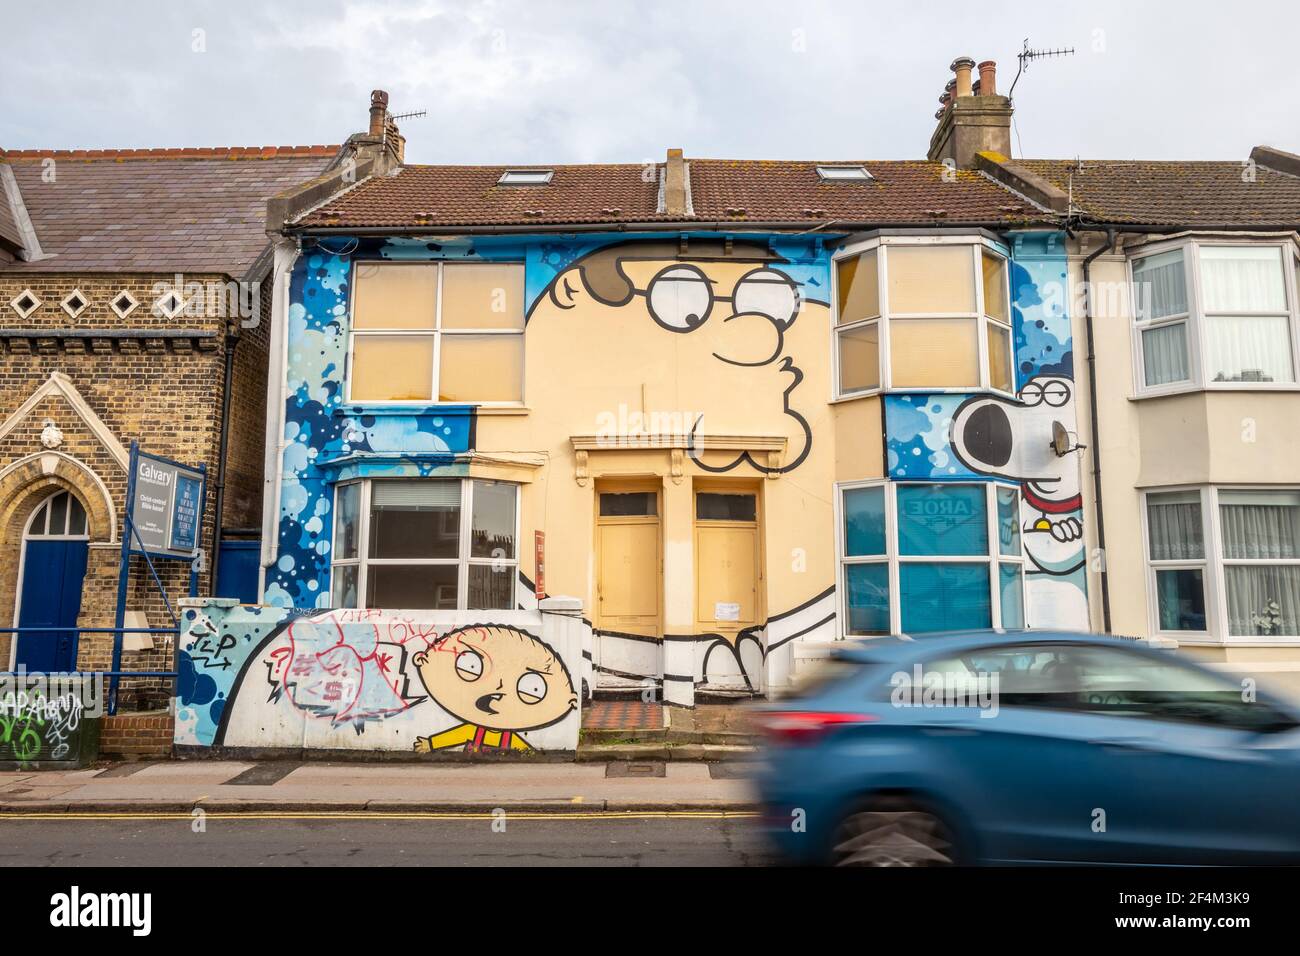 Brighton, le 20 février 2021: Une maison peinte d'après le style de l'émission de télévision américaine Family Guy Banque D'Images